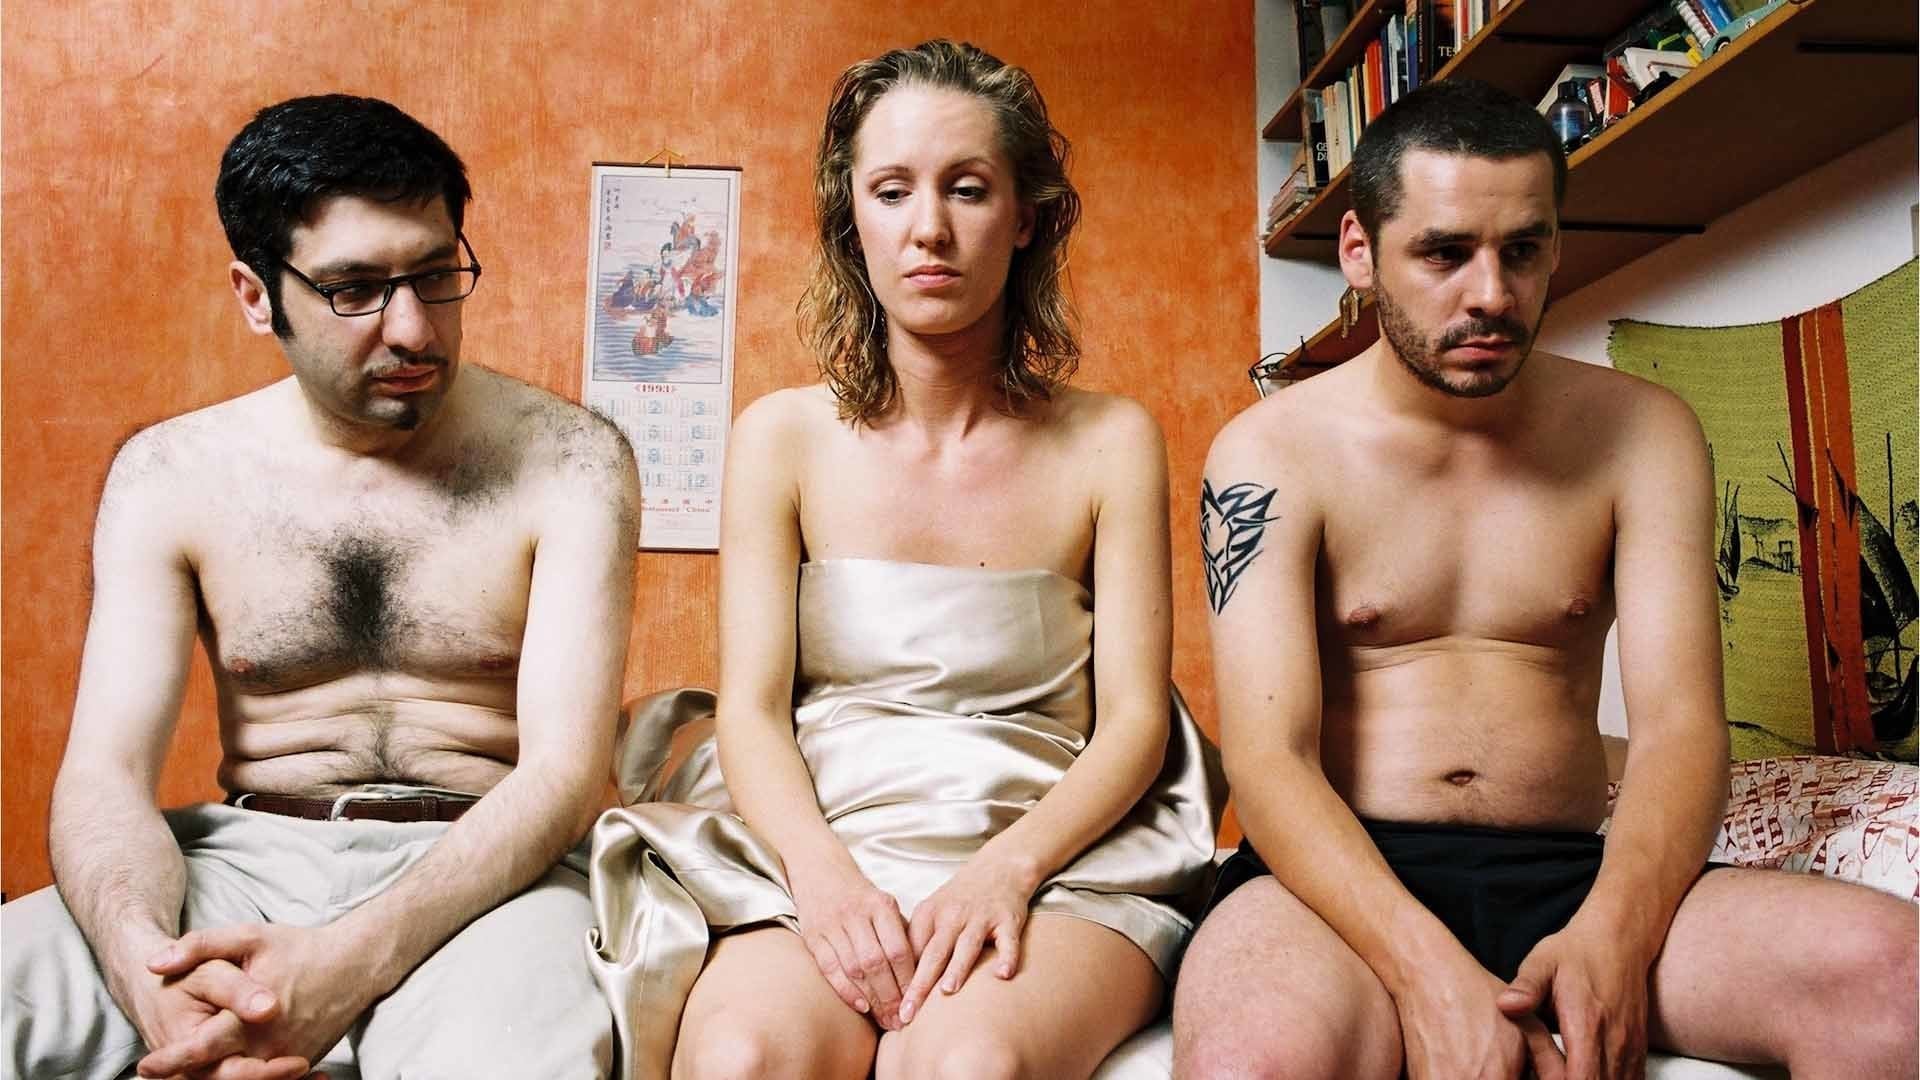 Türkensexfilme Gratis Pornos und Sexfilme Hier Anschauen